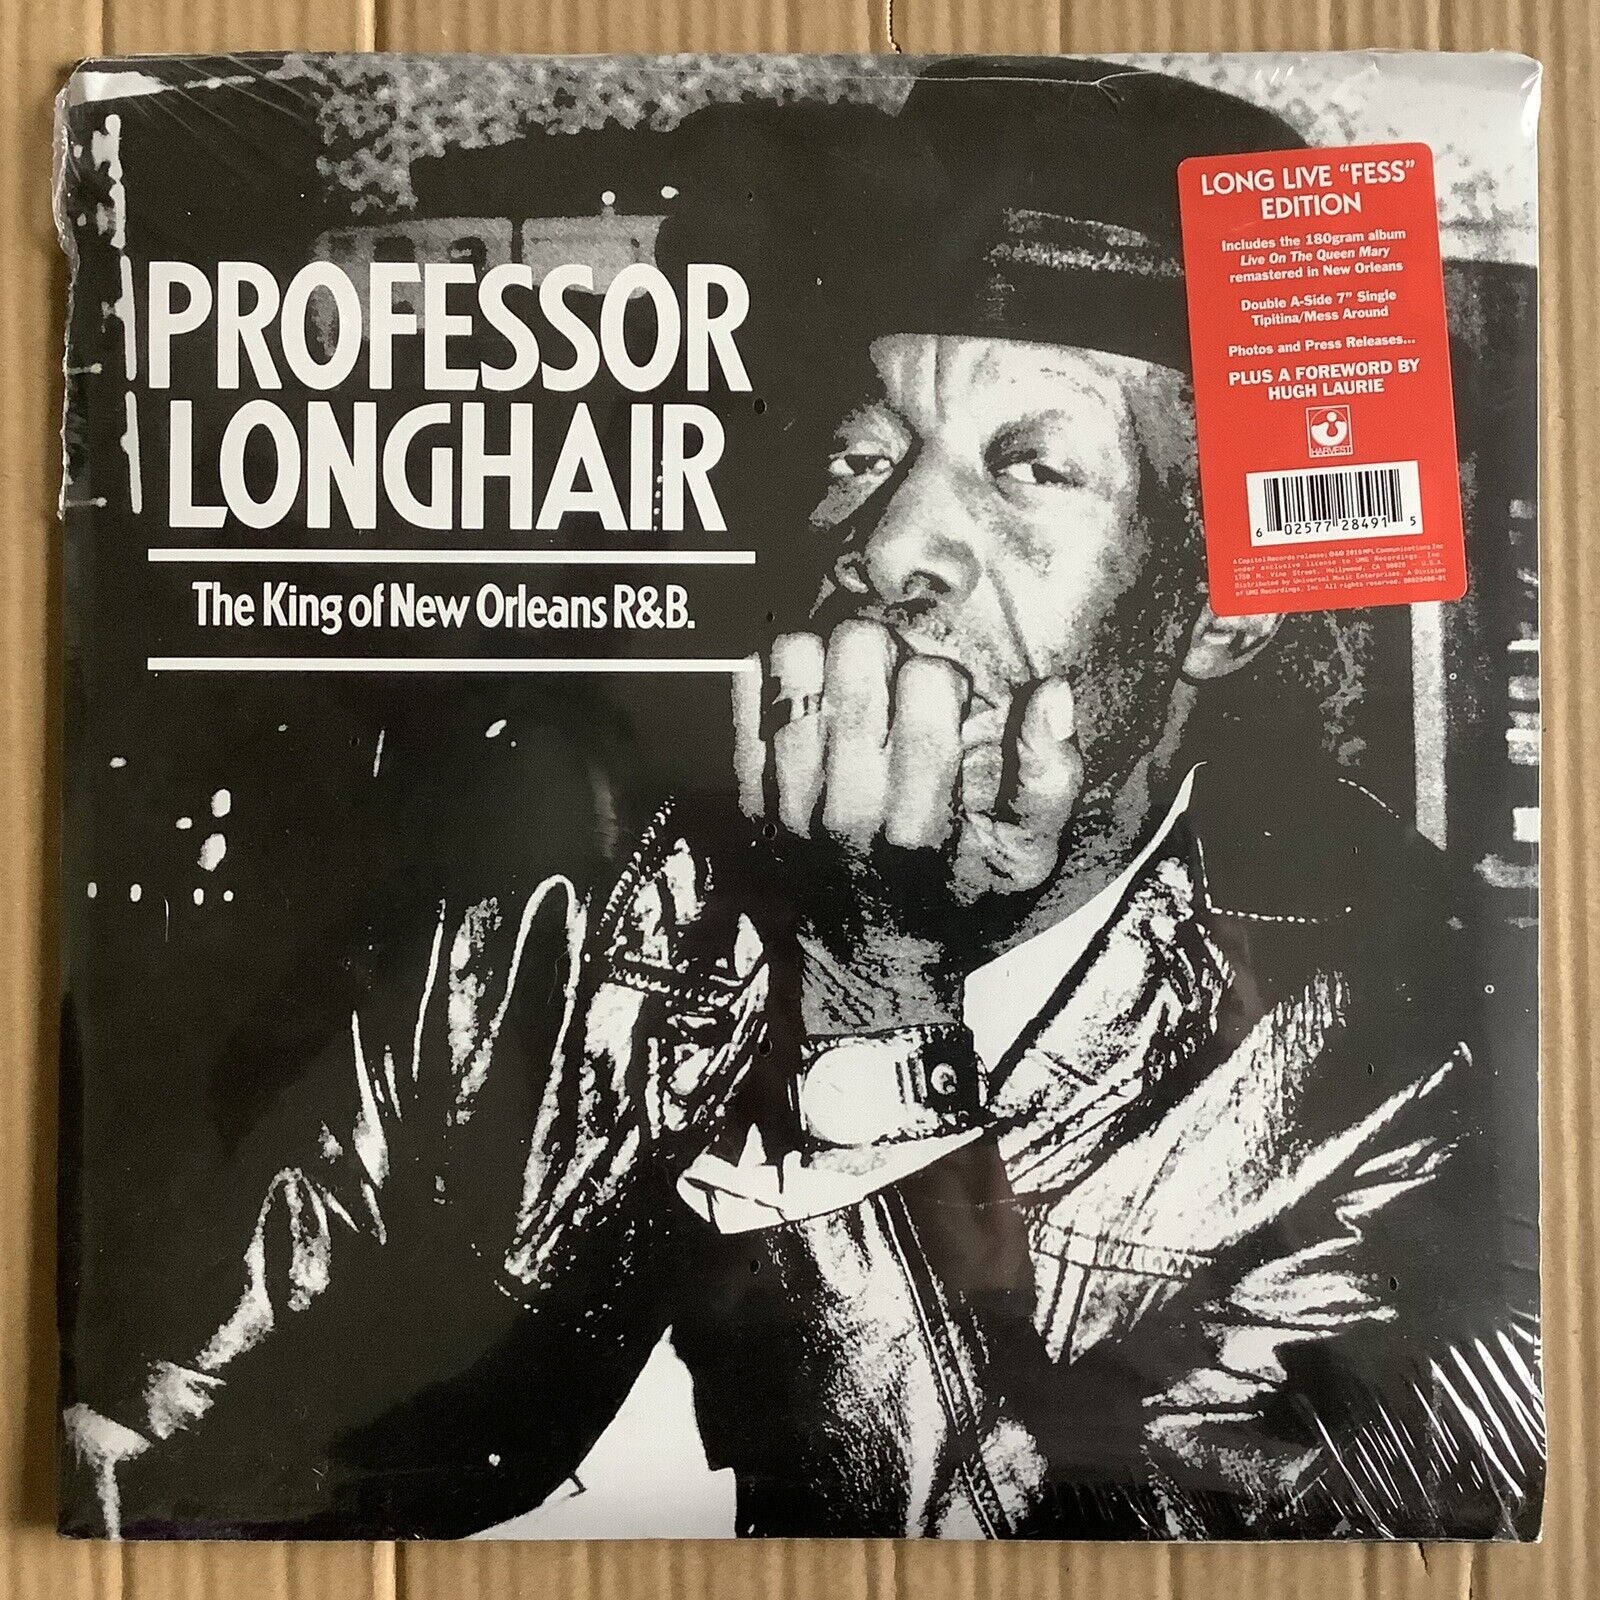 Professor Longhair Live On The Queen Mary Album Cover skal sættes på din skærm. Wallpaper